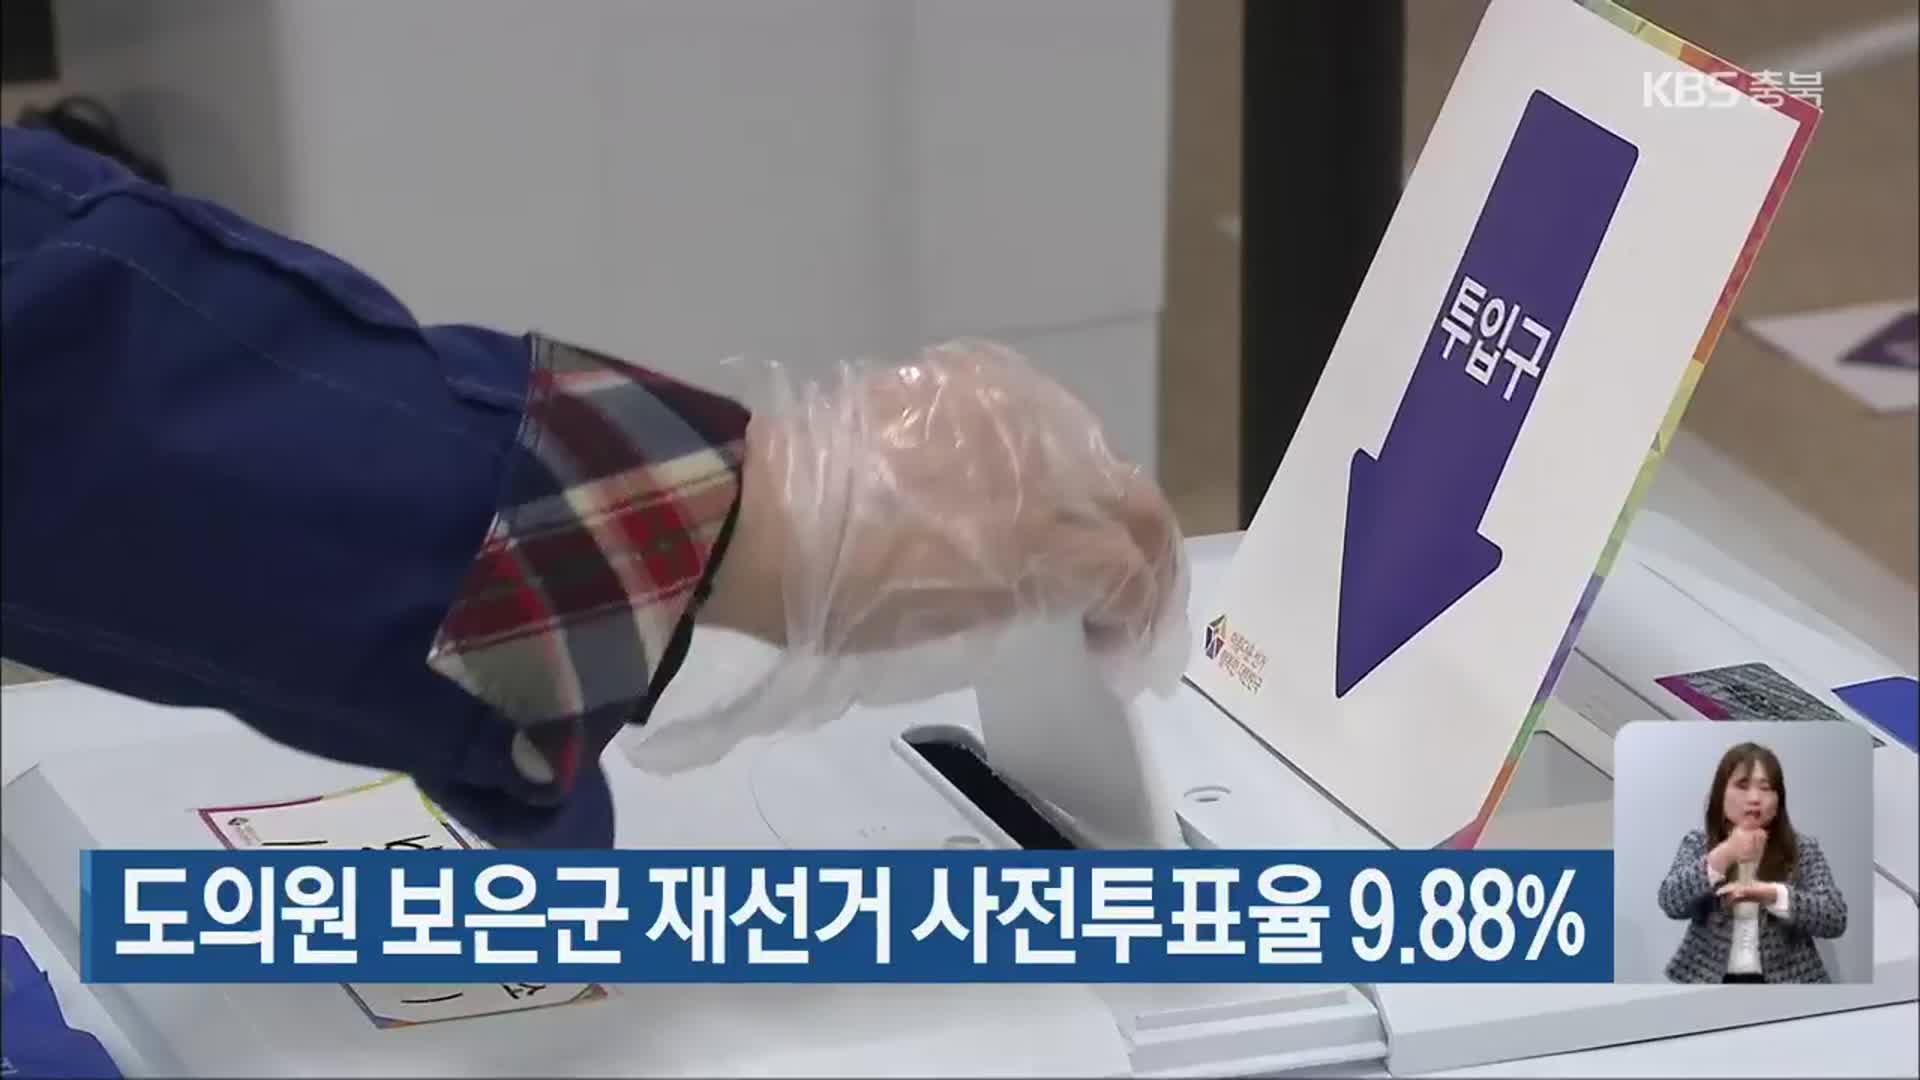 도의원 보은군 재선거 사전투표율 9.88%